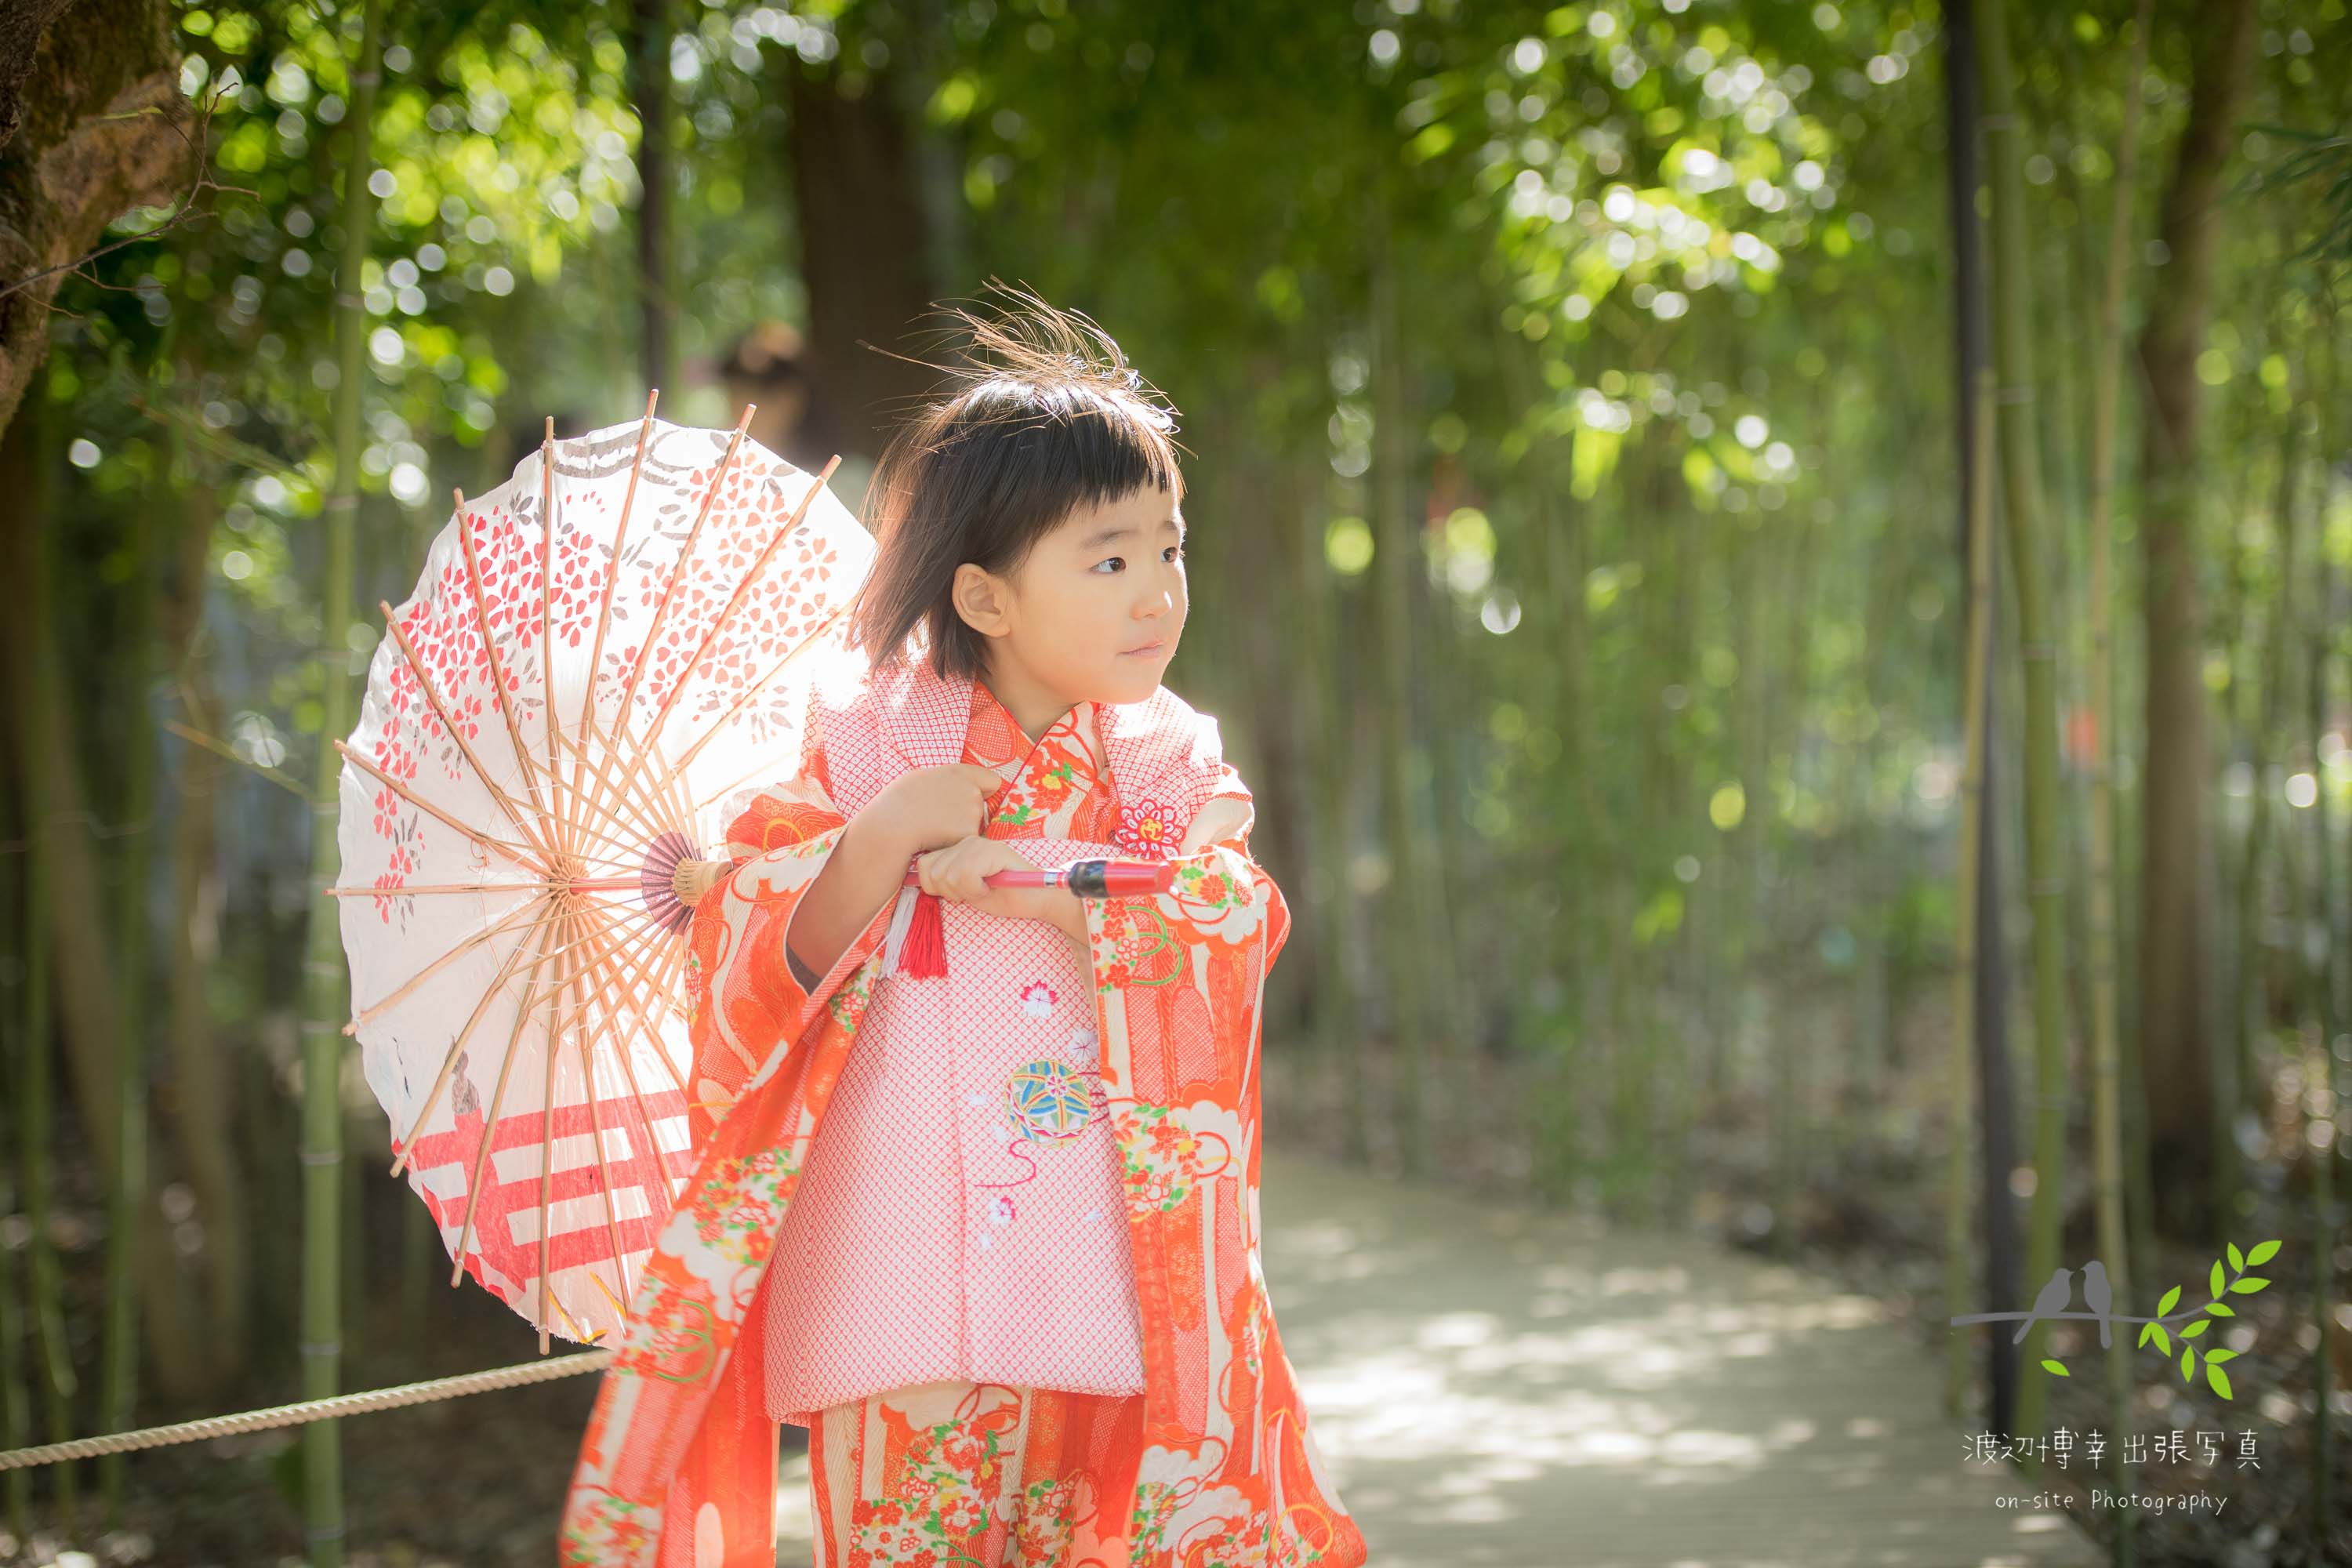 和傘をさして立つオレンジ色の着物姿の小さな女の子